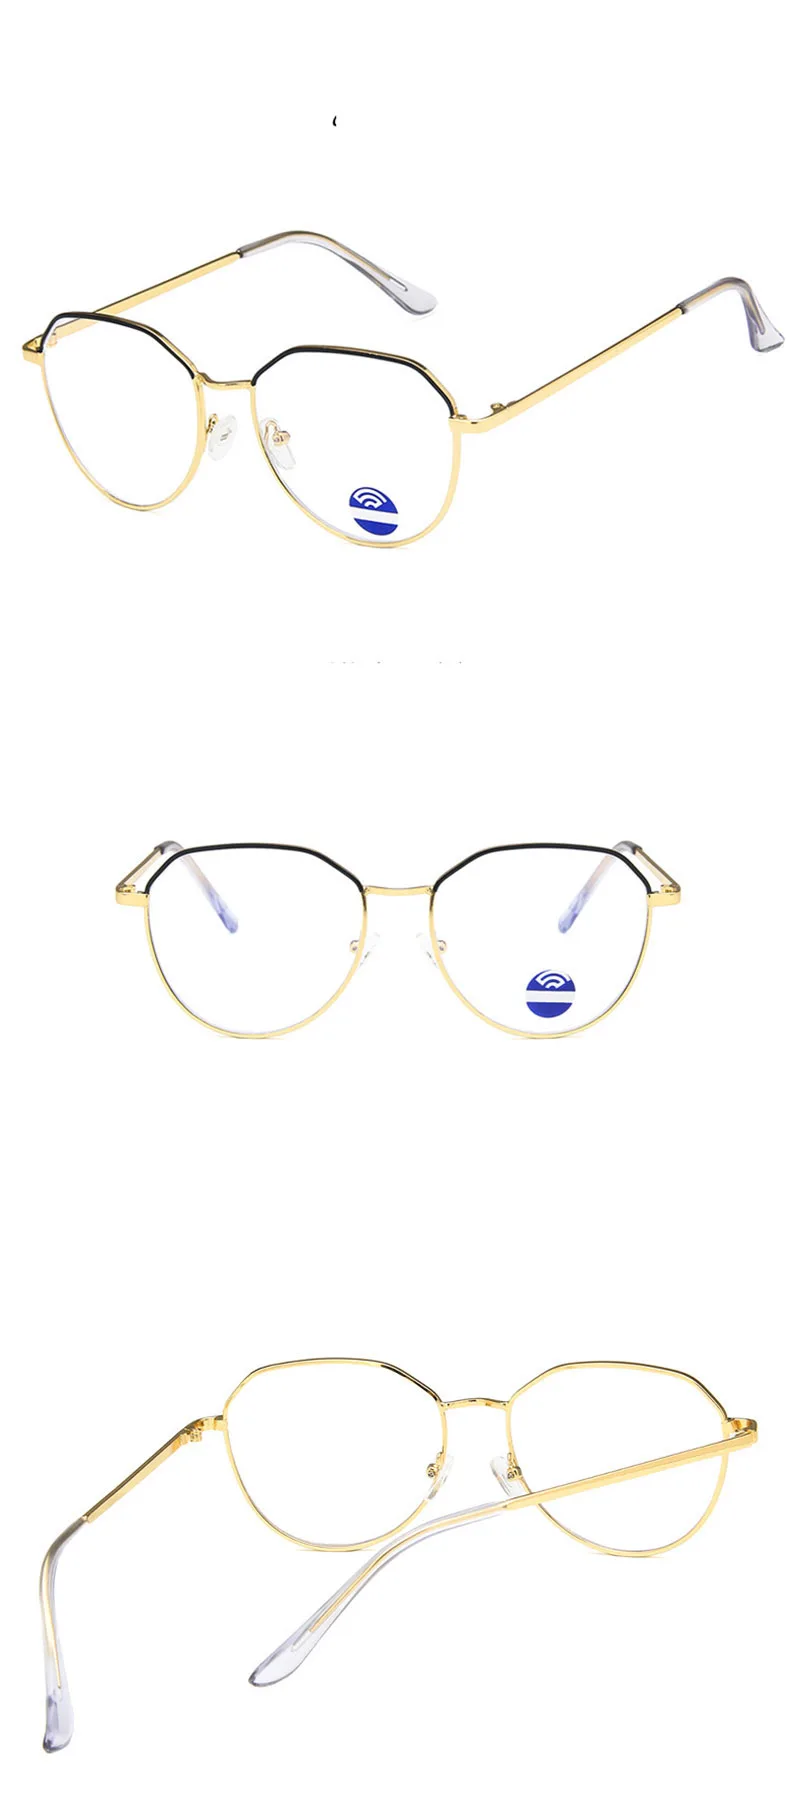 Синий светильник, блокирующие очки для мужчин и женщин, металлическая оправа для очков, анти-синий светильник, оптические компьютерные очки в стиле ретро, lunette de vue